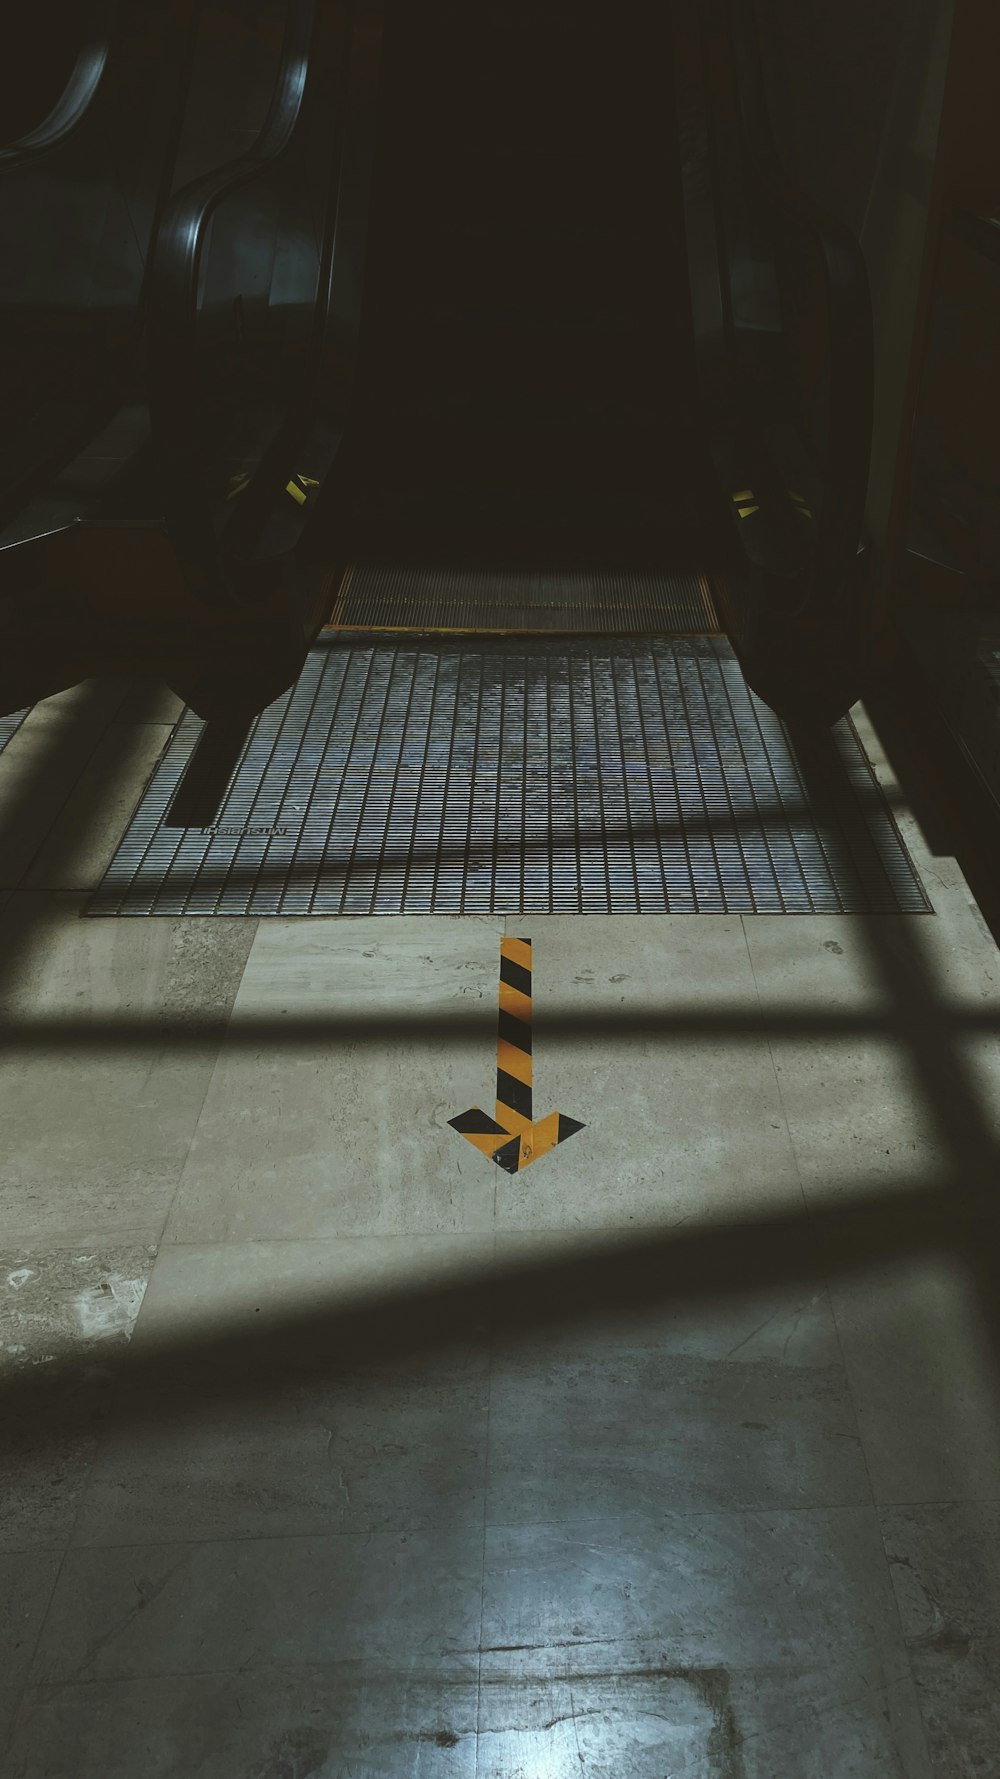 yellow arrow sign on gray concrete floor